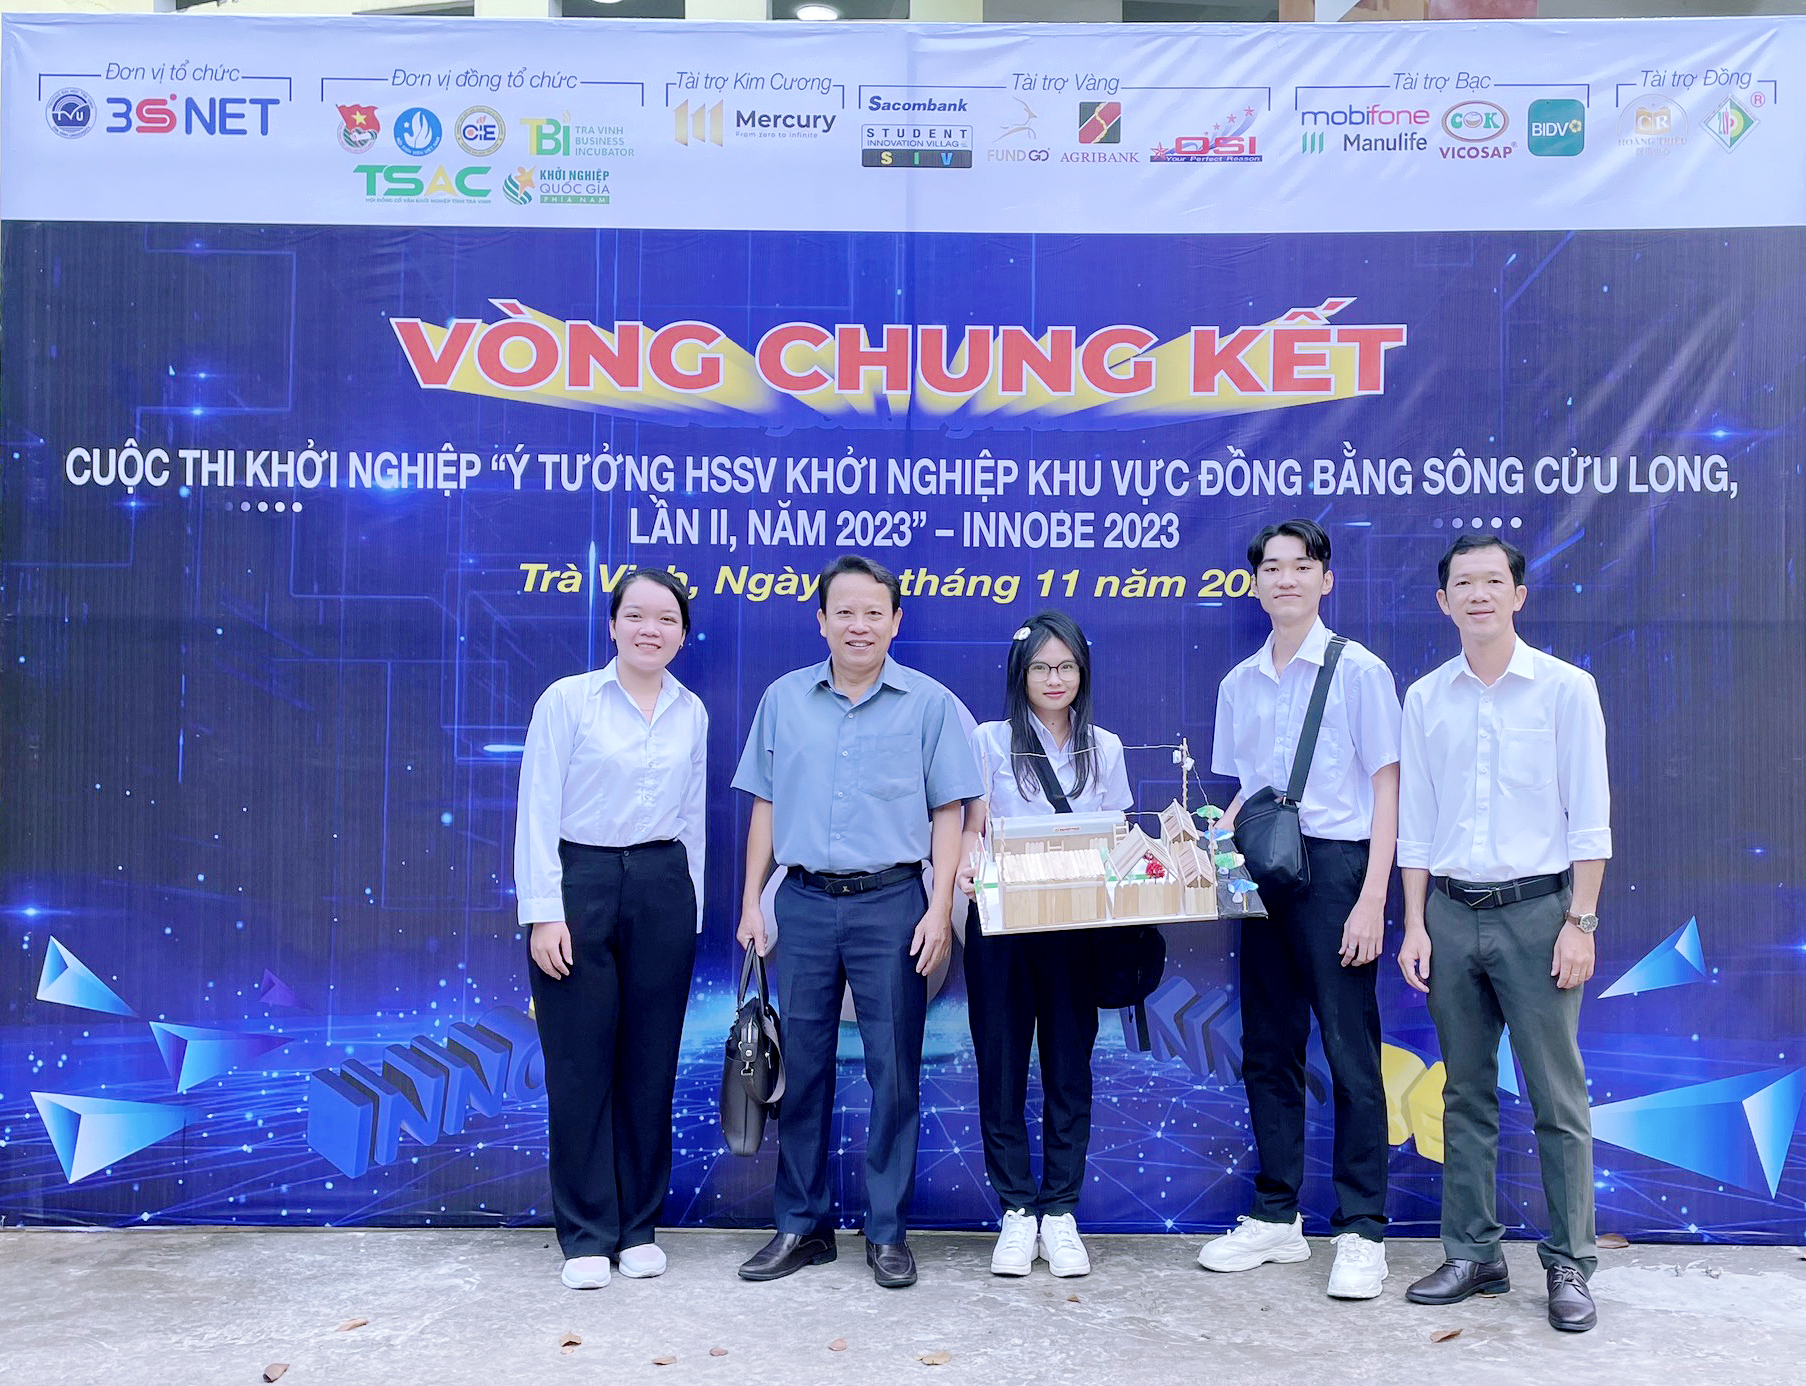 Trường Đại học Bạc Liêu tham gia chung kết Cuộc thi khởi nghiệp Ý tưởng HSSV khởi nghiệp - INNOBE 2023 và ra mắt Làng HSSV sáng tạo khu vực Đồng bằng Sông Cửu Long